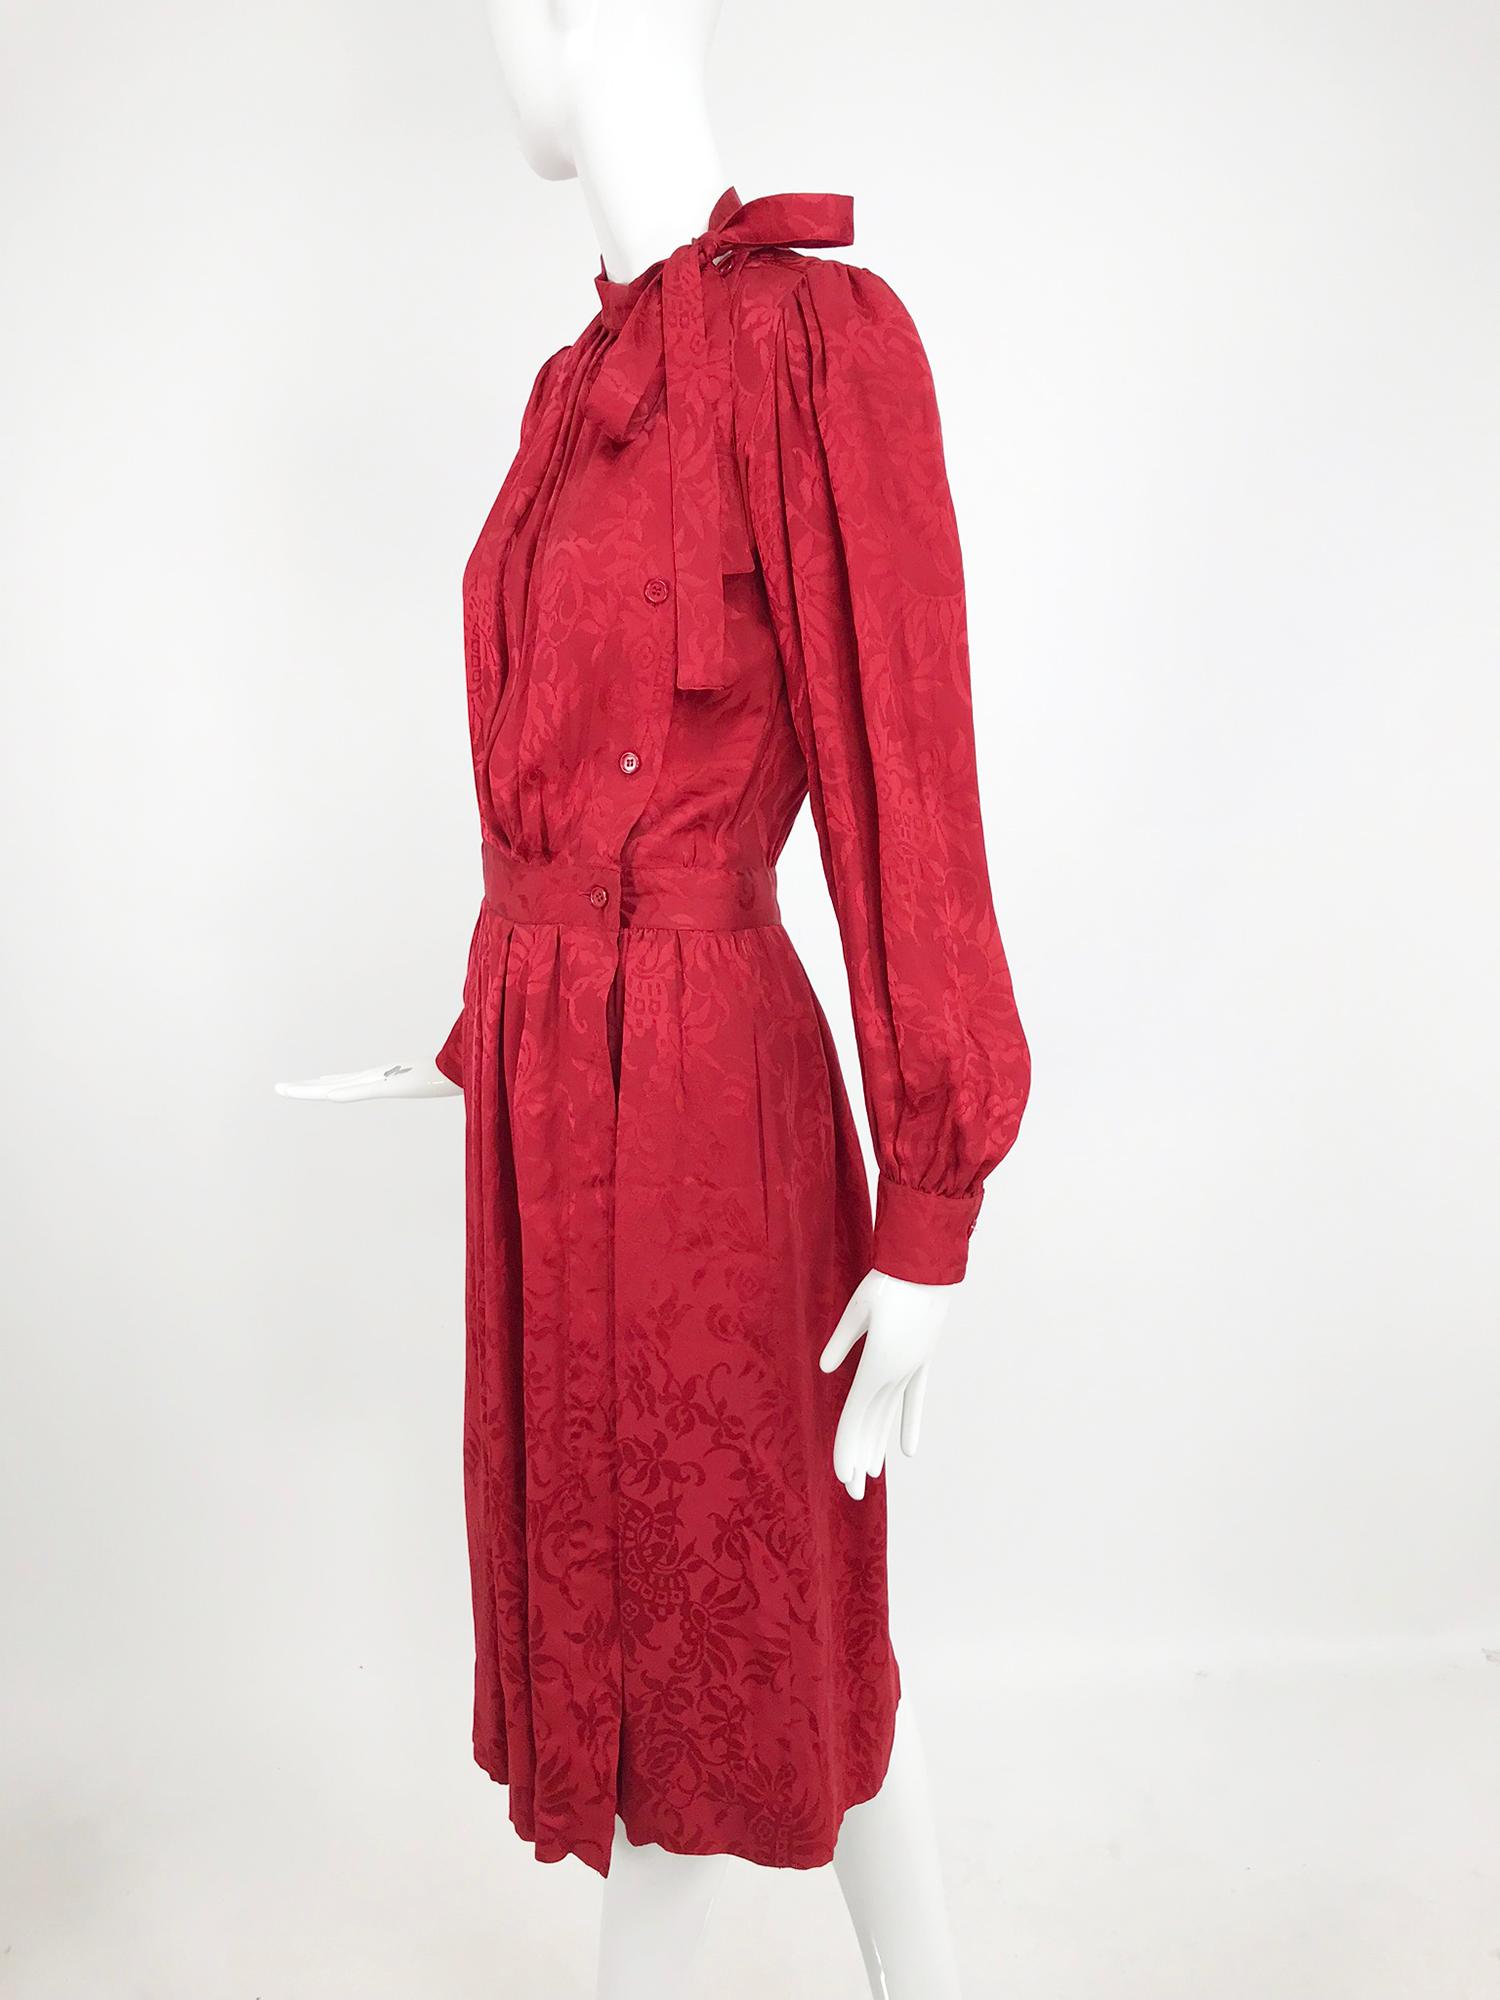 Yves Saint Laurent - Robe en jacquard de soie rouge avec nœud papillon, années 1970 11